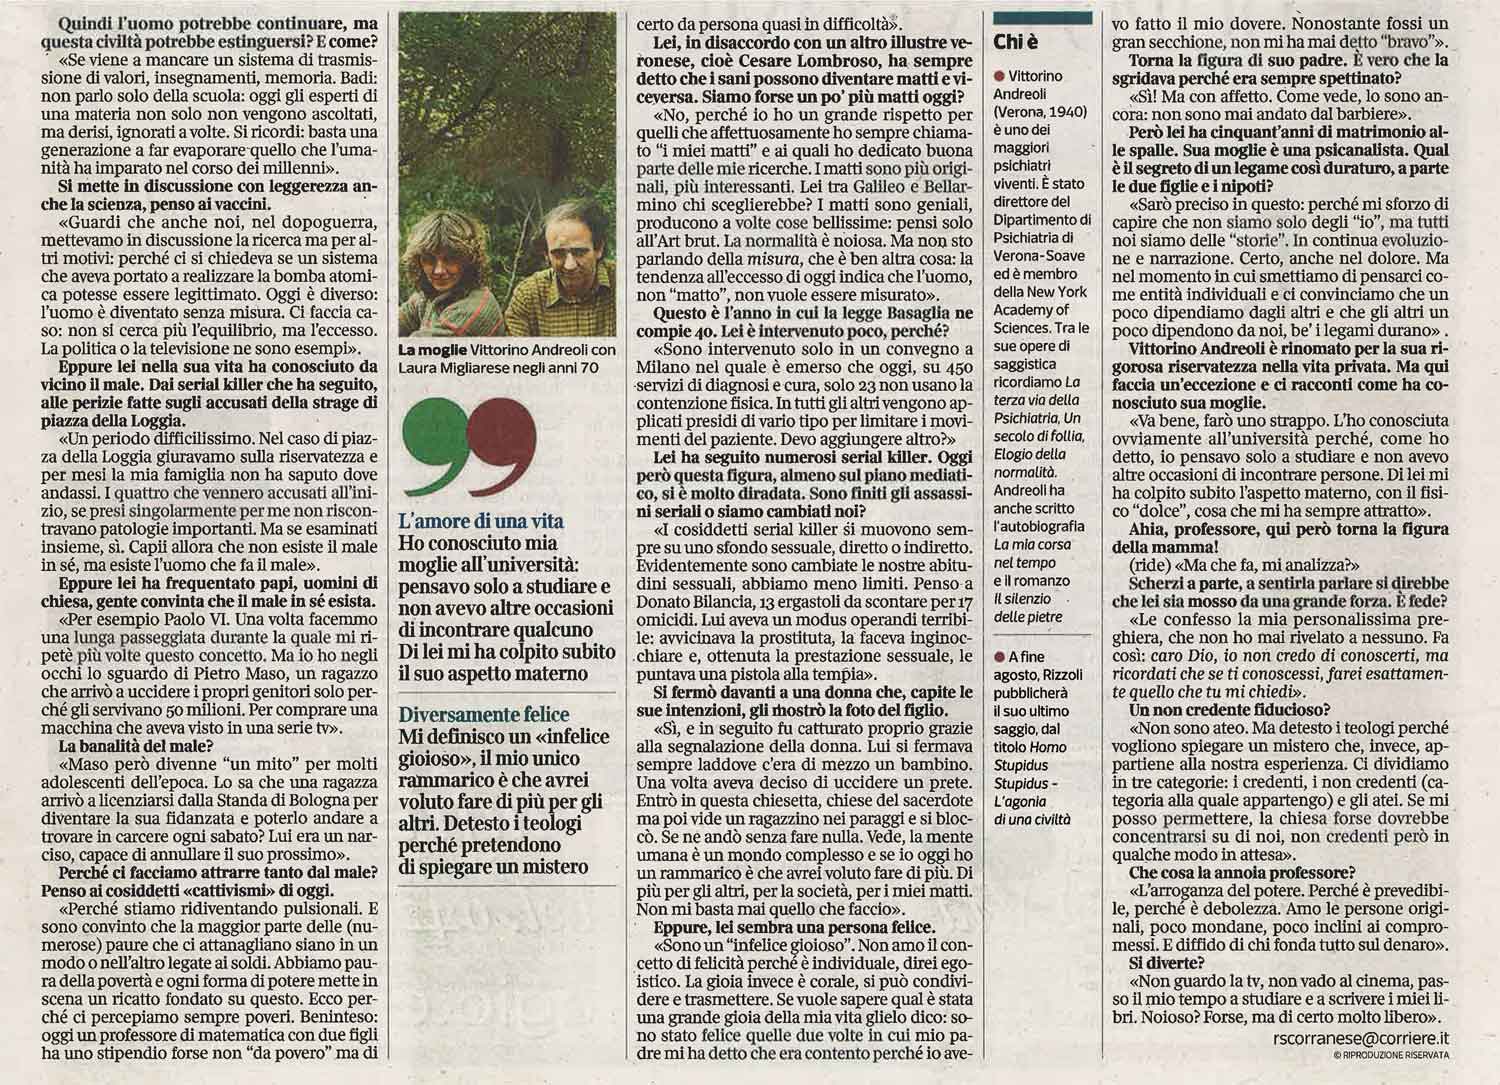 Corriere della Sera - 6 agosto 2018